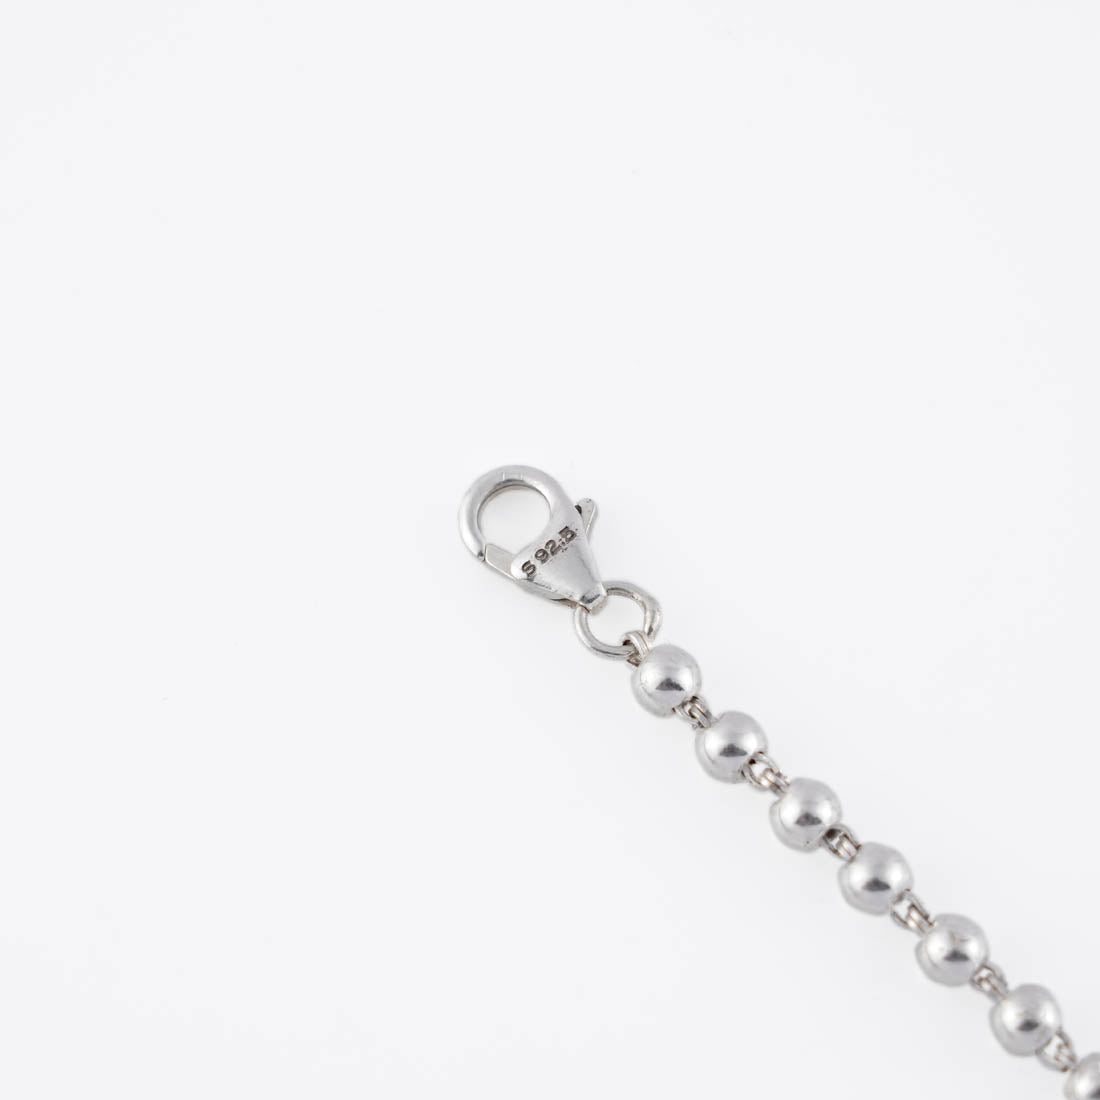 Silver Single Line Bracelet for Women